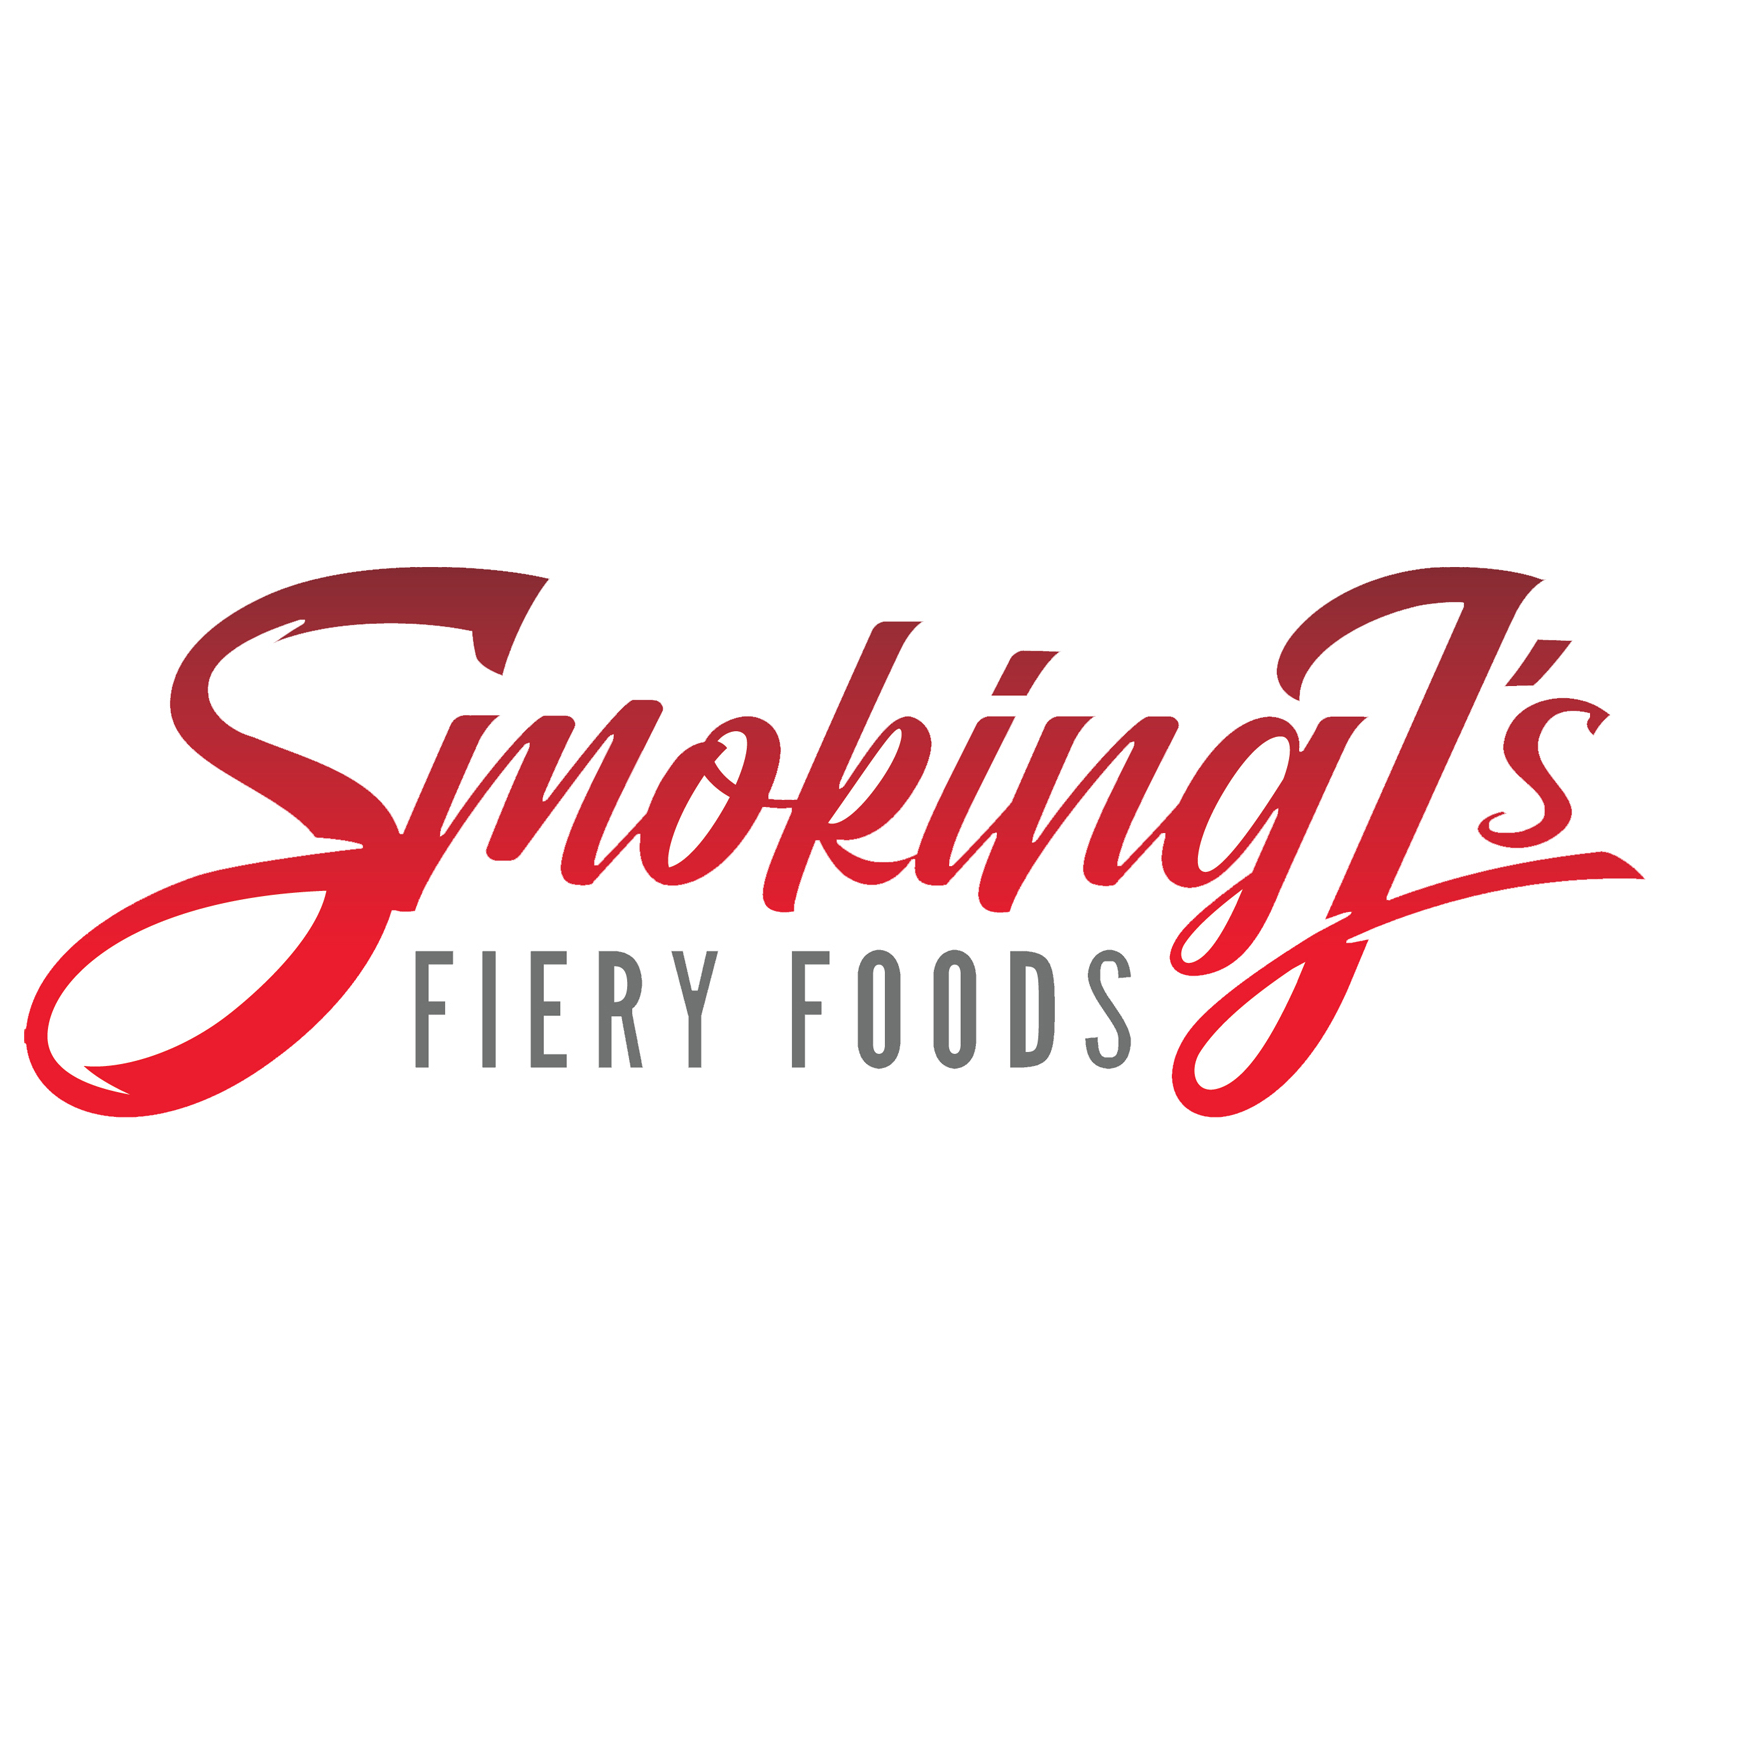 Smoking J's Fiery Foods